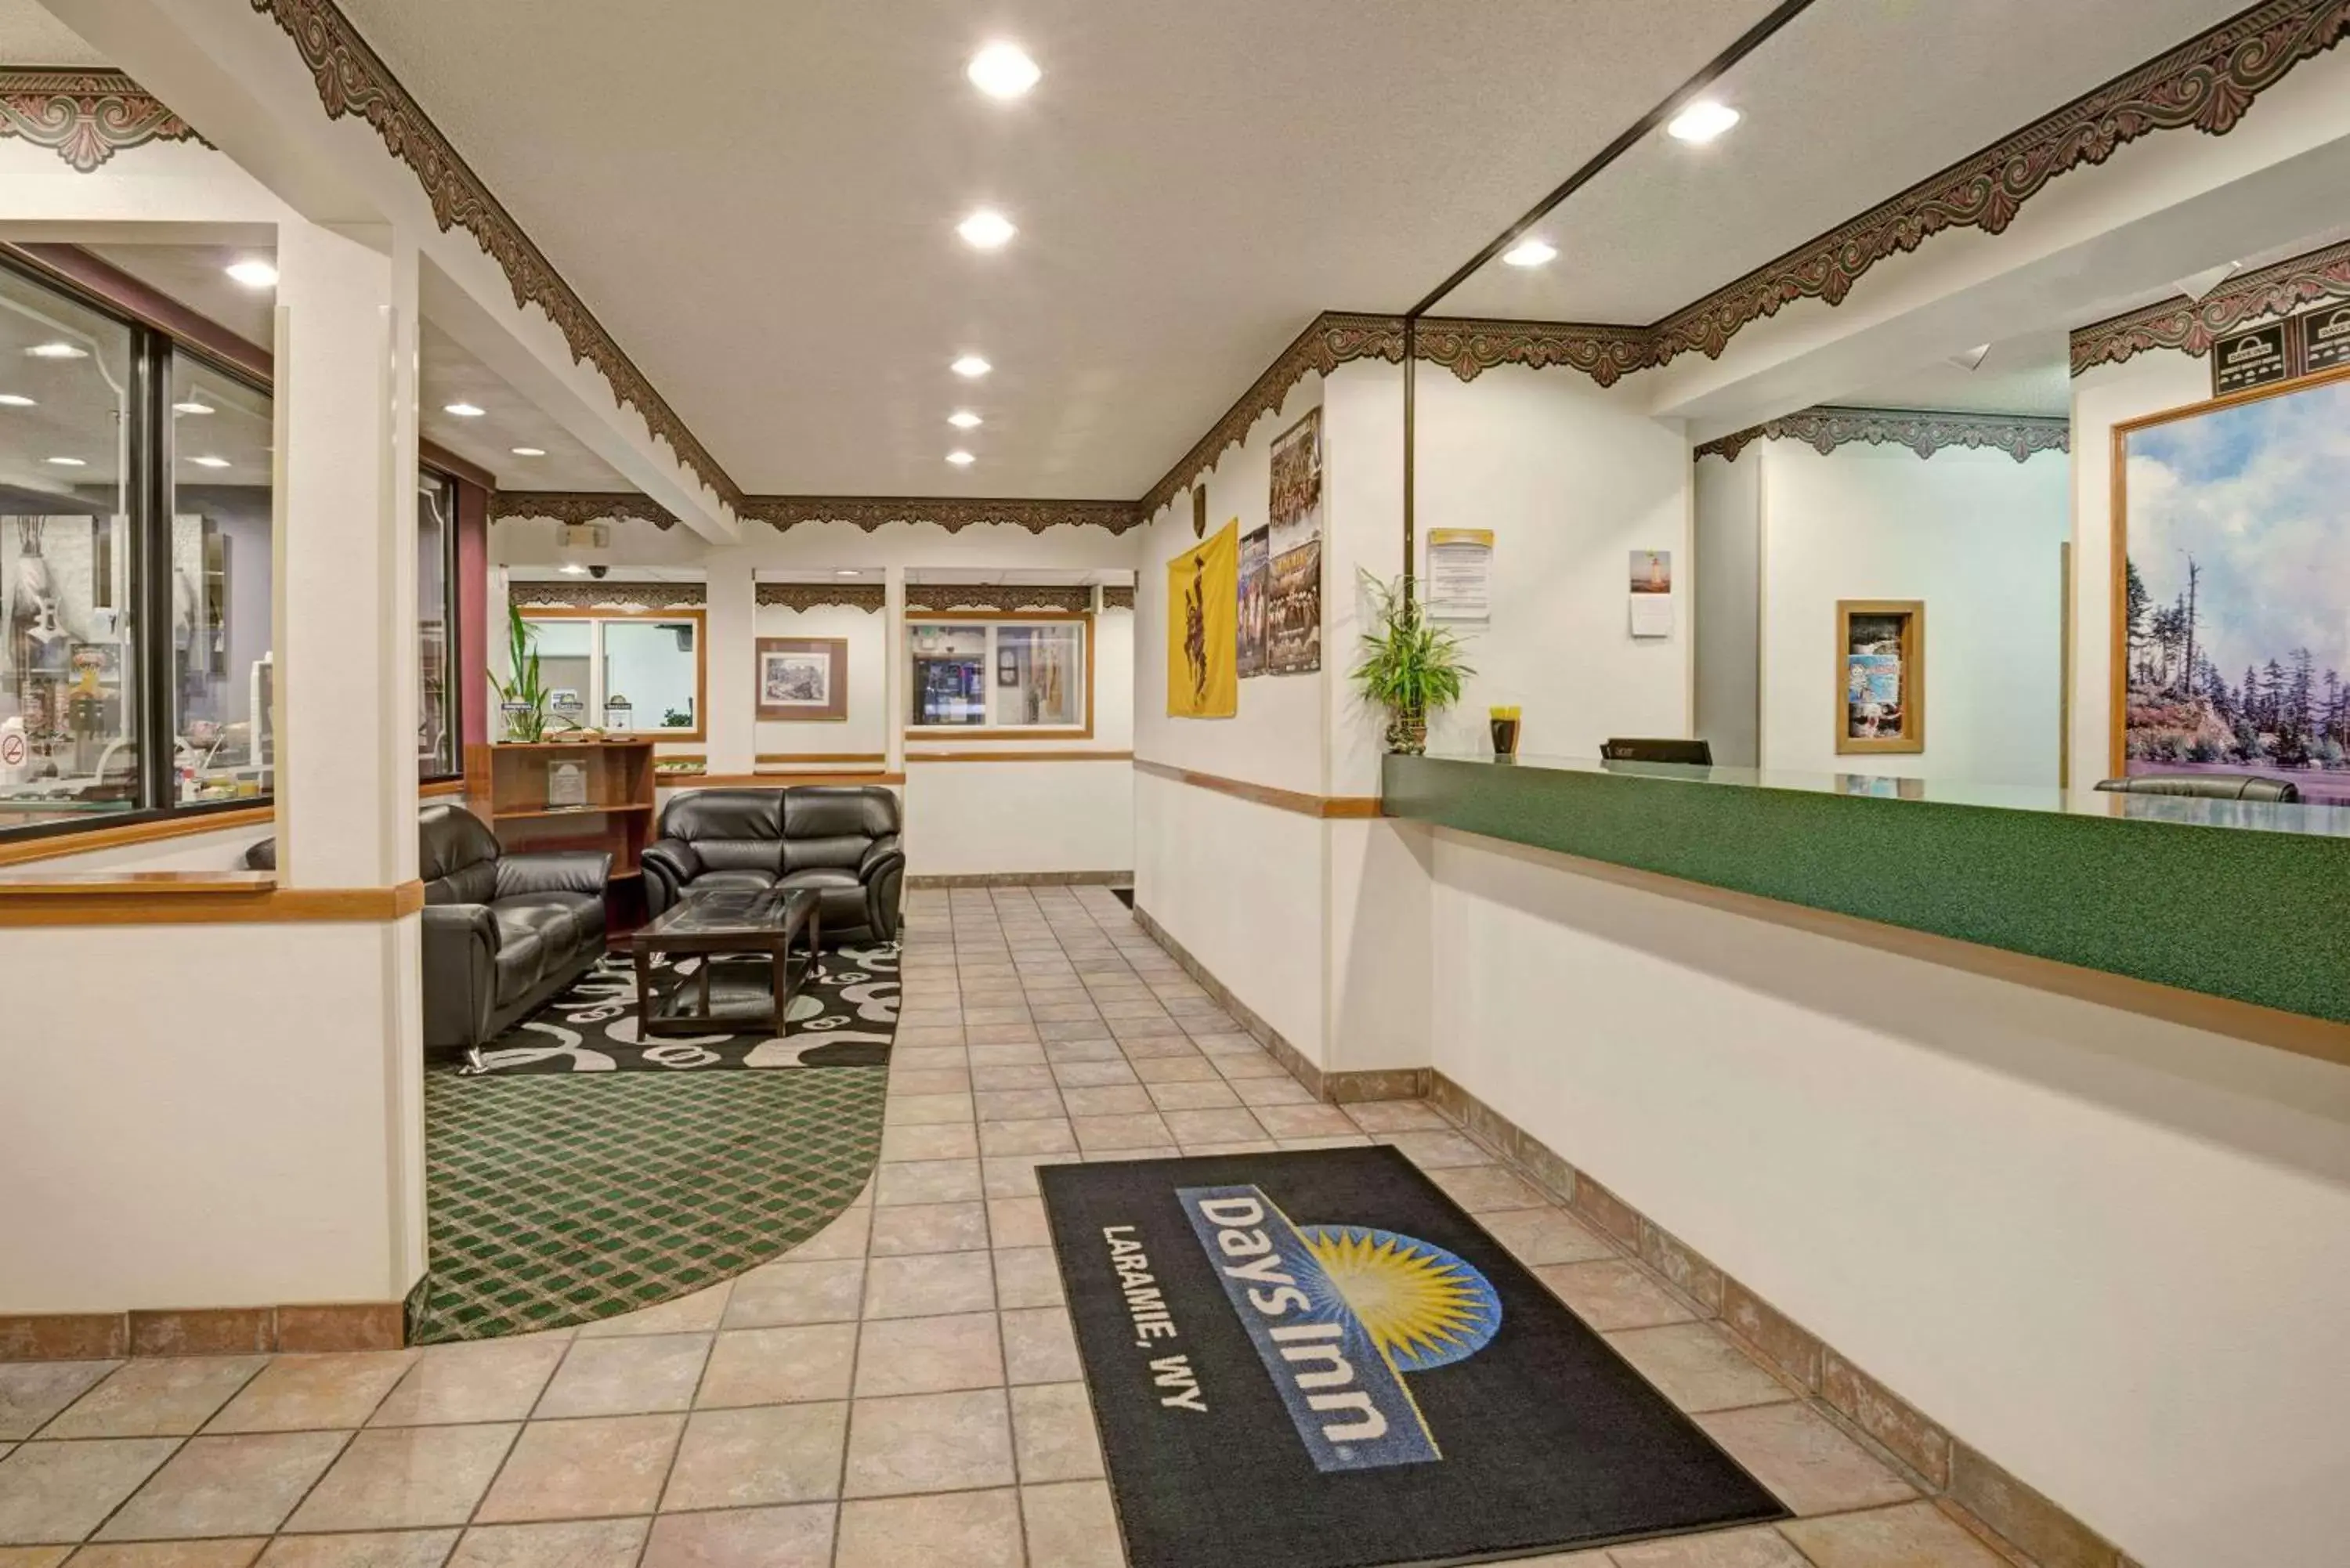 Lobby or reception, Lobby/Reception in Days Inn by Wyndham Laramie